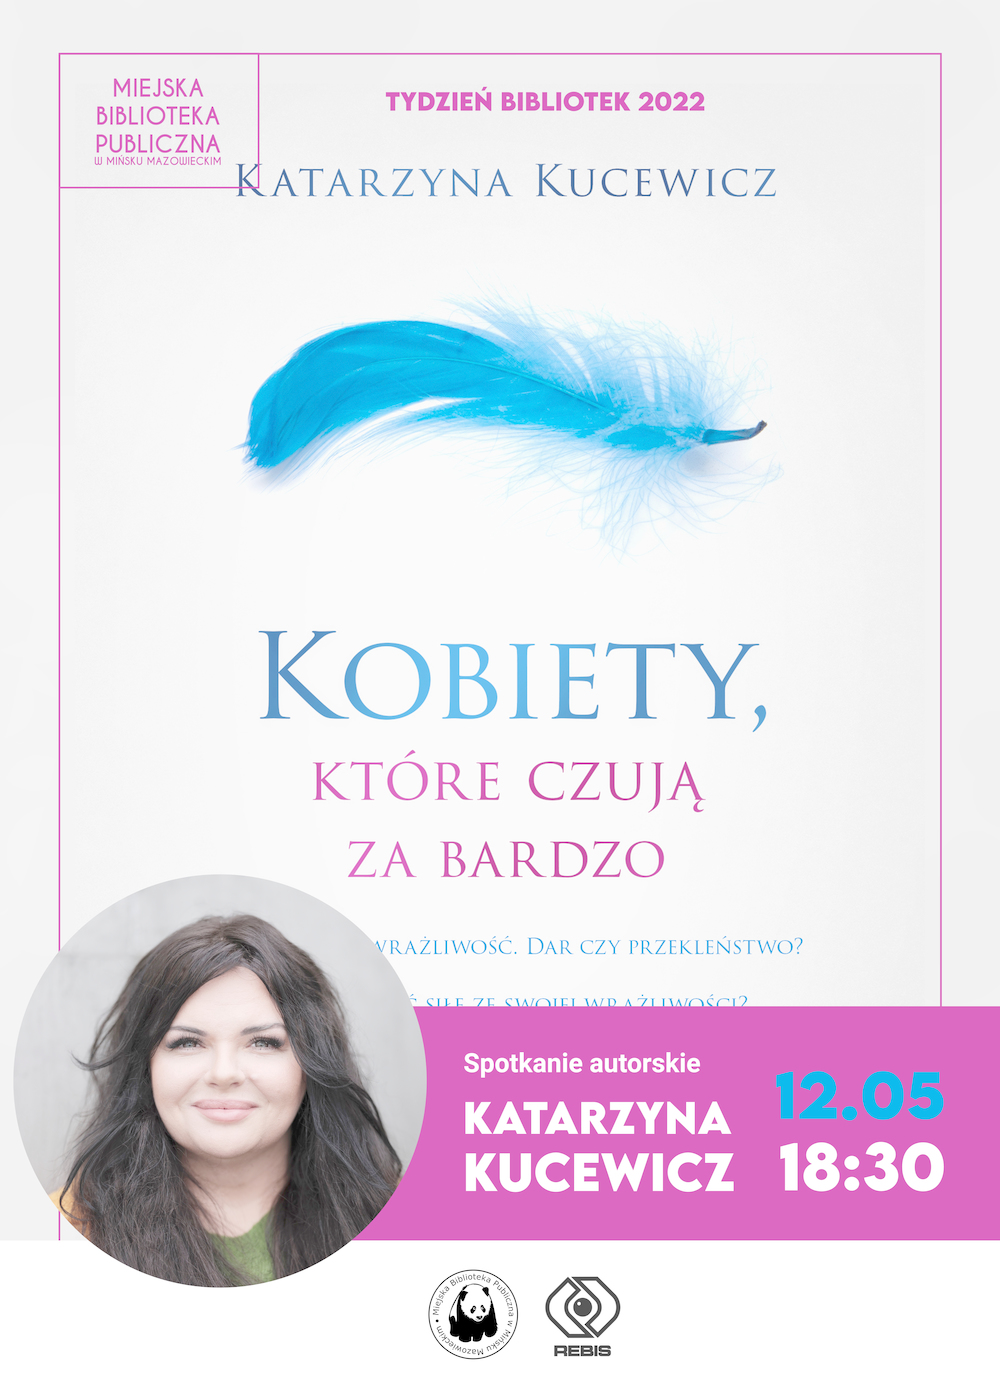 Spotkanie autorskie z Katarzyną Kucewicz